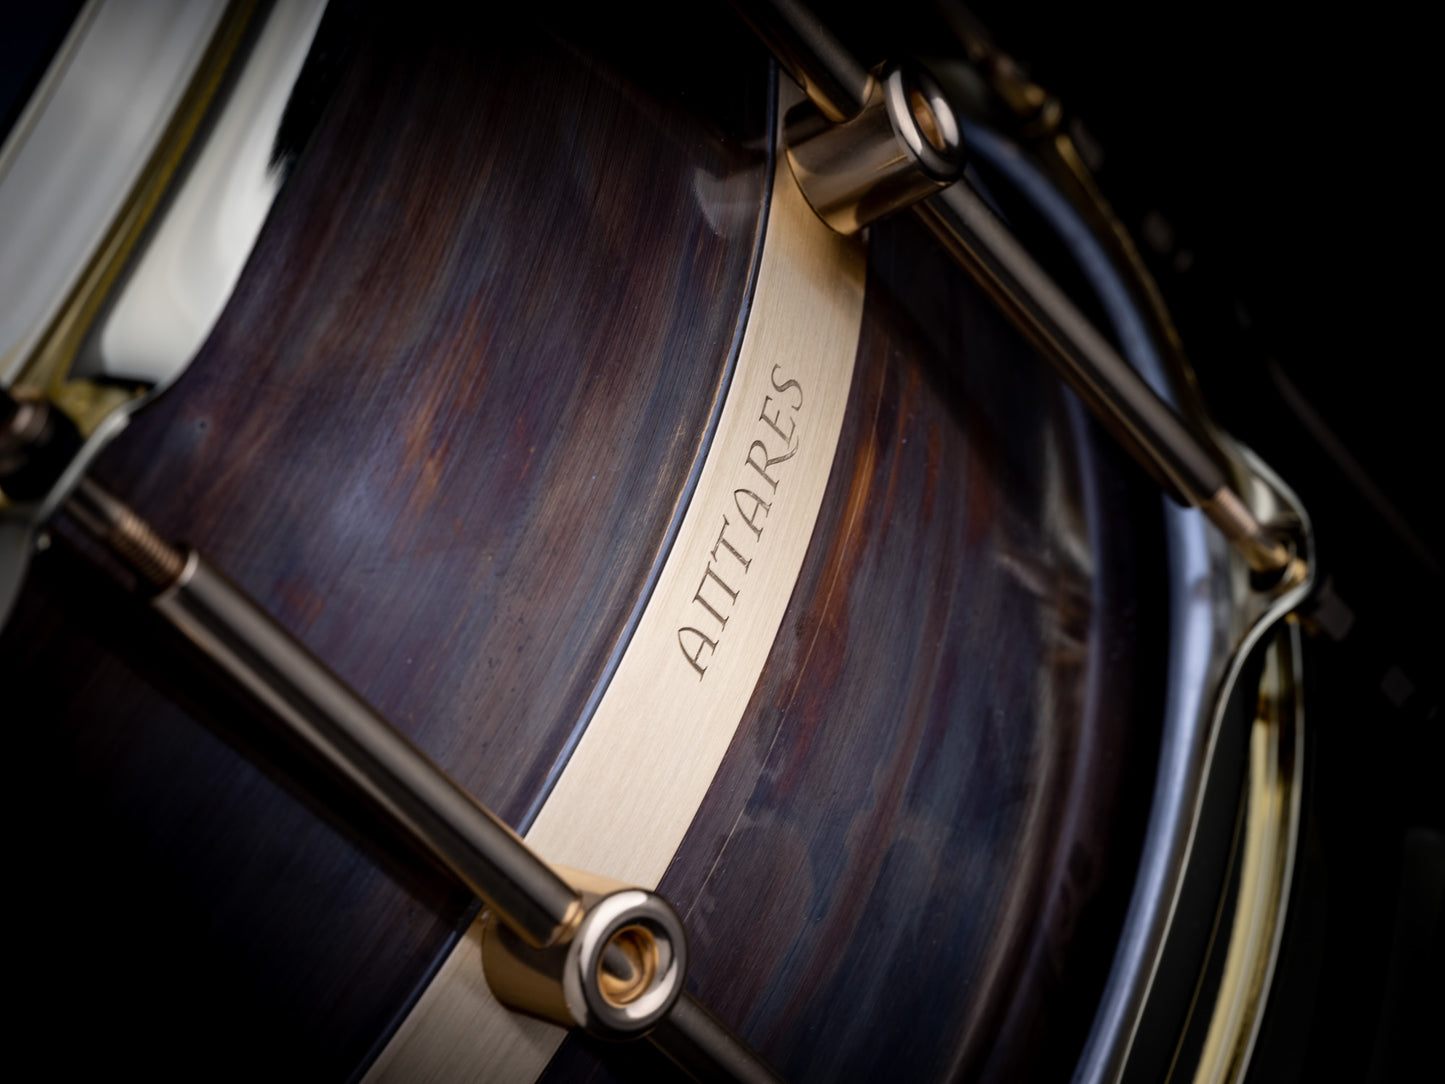 Schagerl Antares 14" x 6.5" Custom Dark Brass Snare Drum